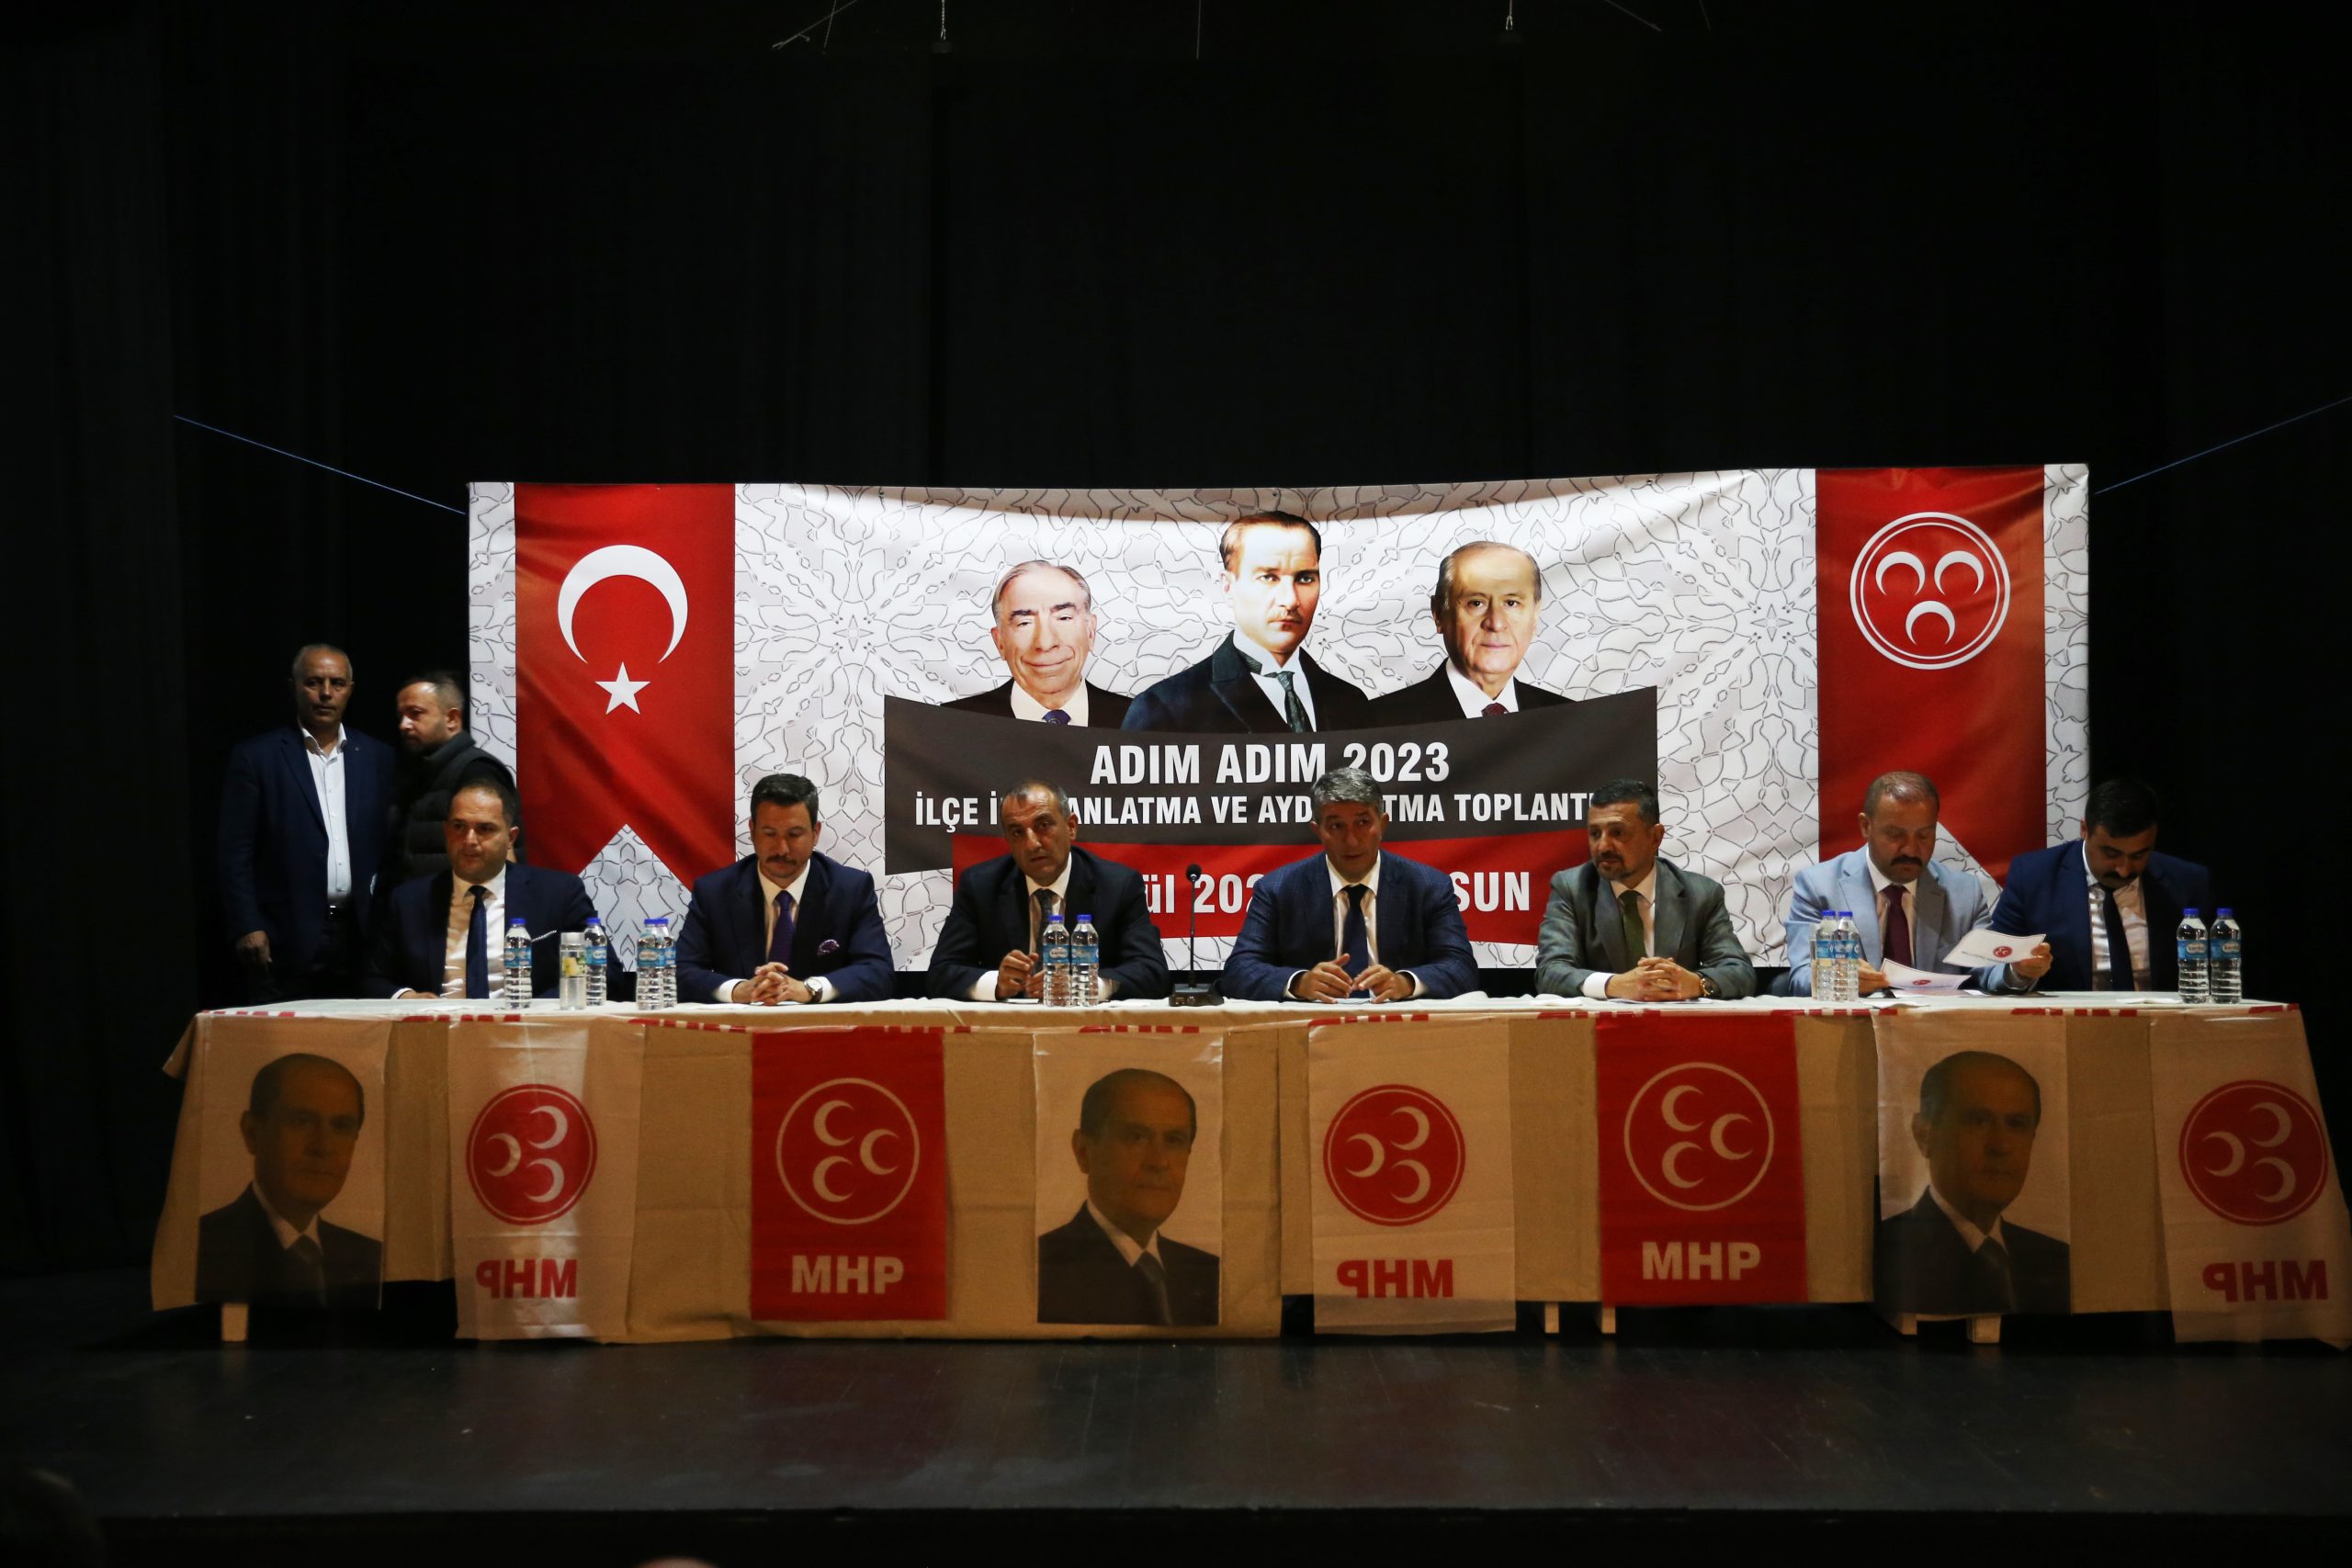 MHP Heyeti Giresun’da “Adım Adım 2023” Toplantısı Düzenledi